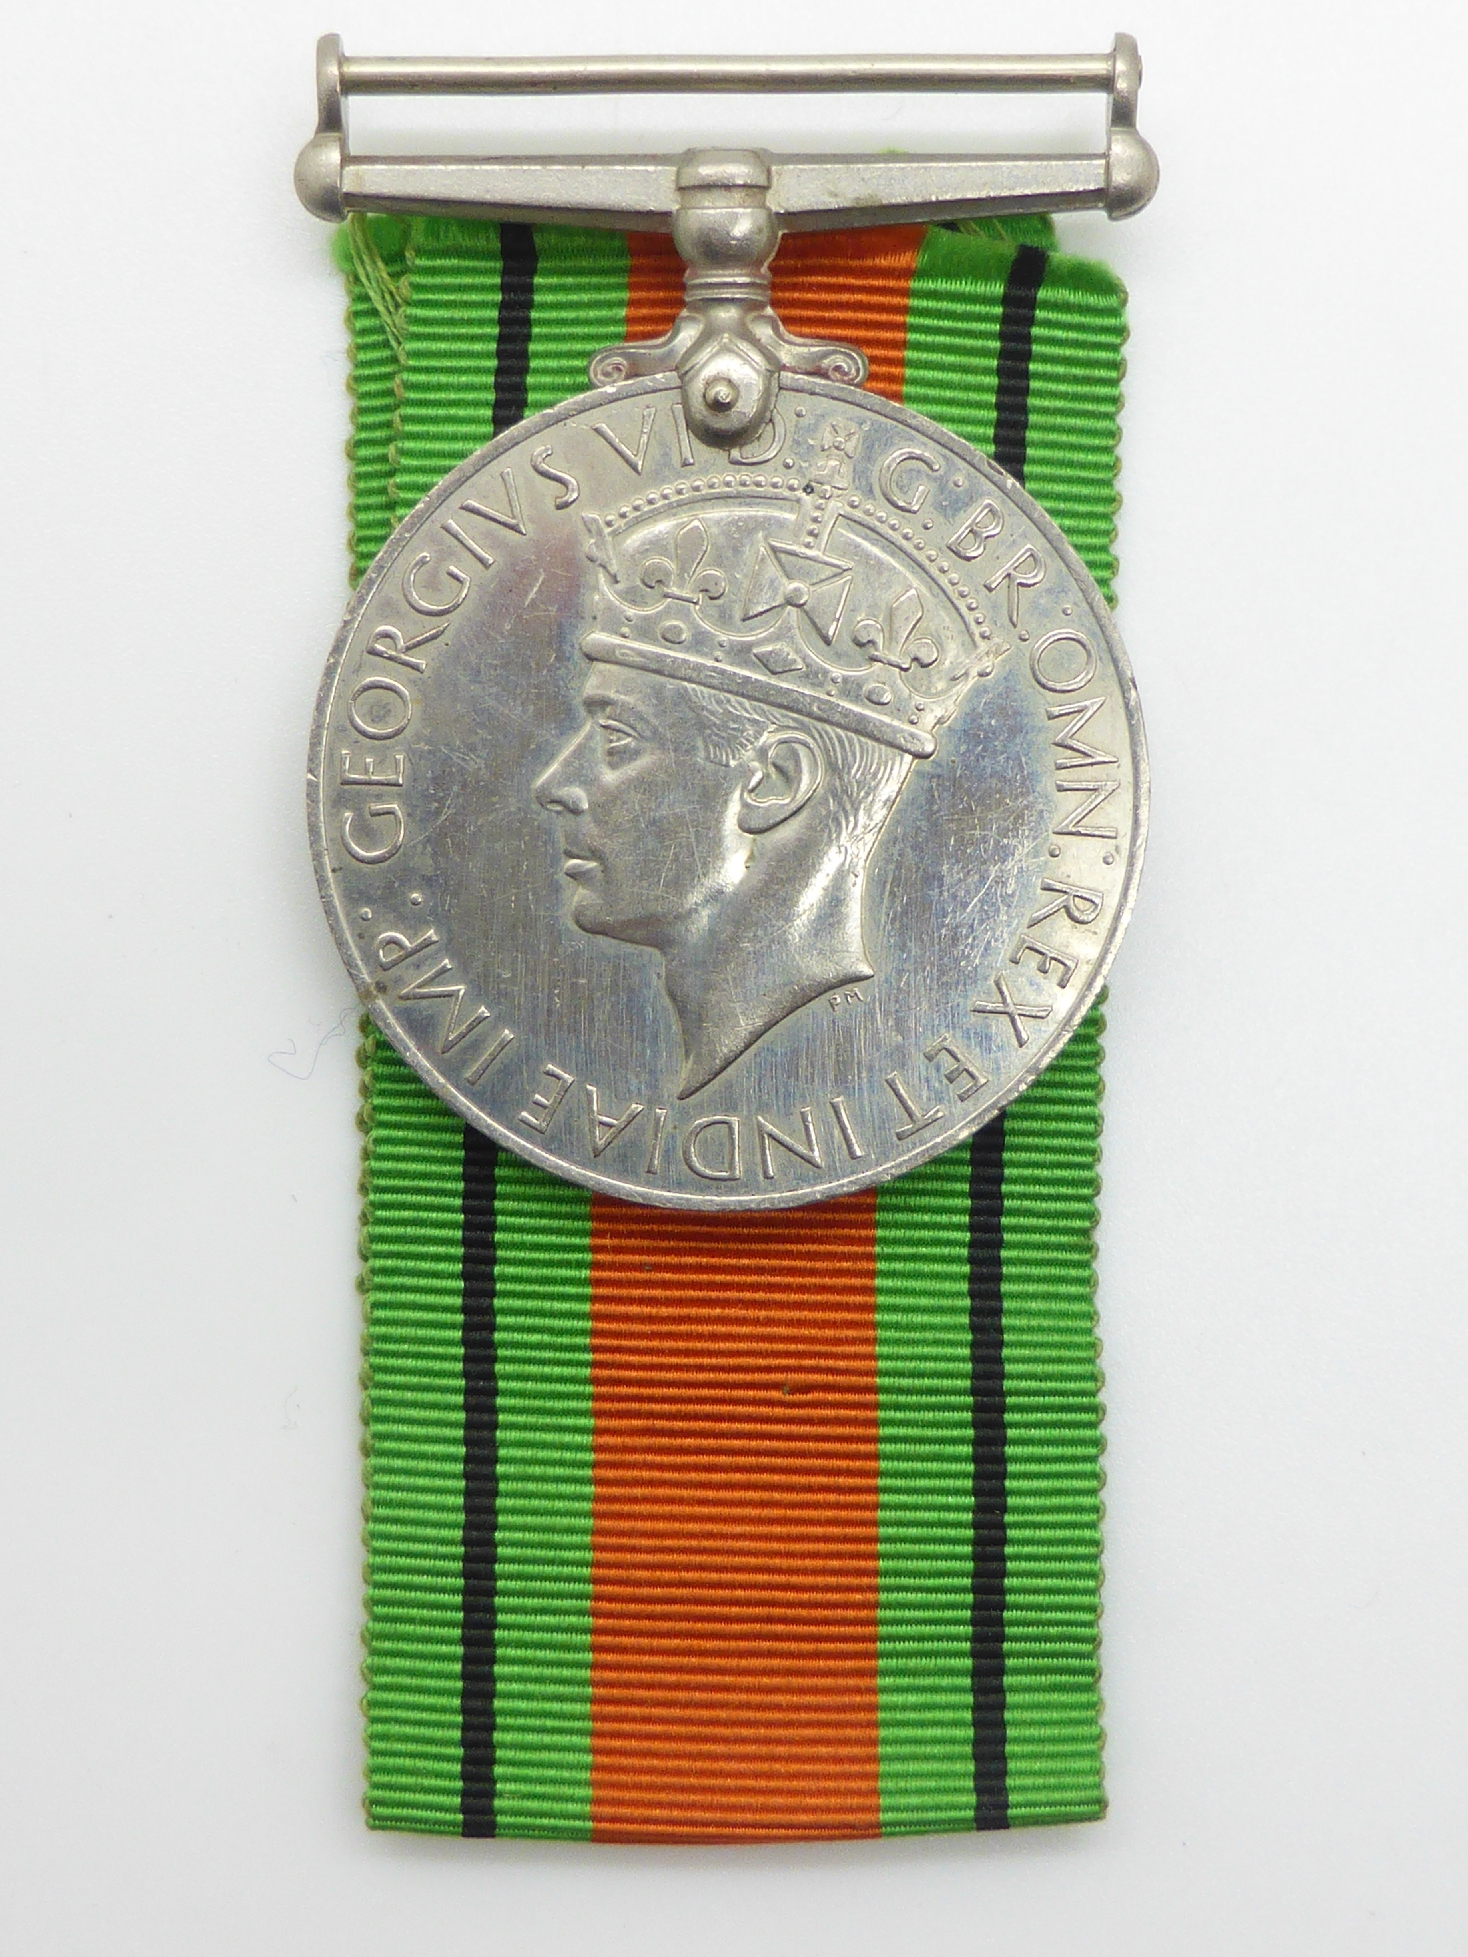 Elizabeth II Imperial Service Medal named to Mrs Jean Margaret Rose together with a WWII War Medal - Image 28 of 47